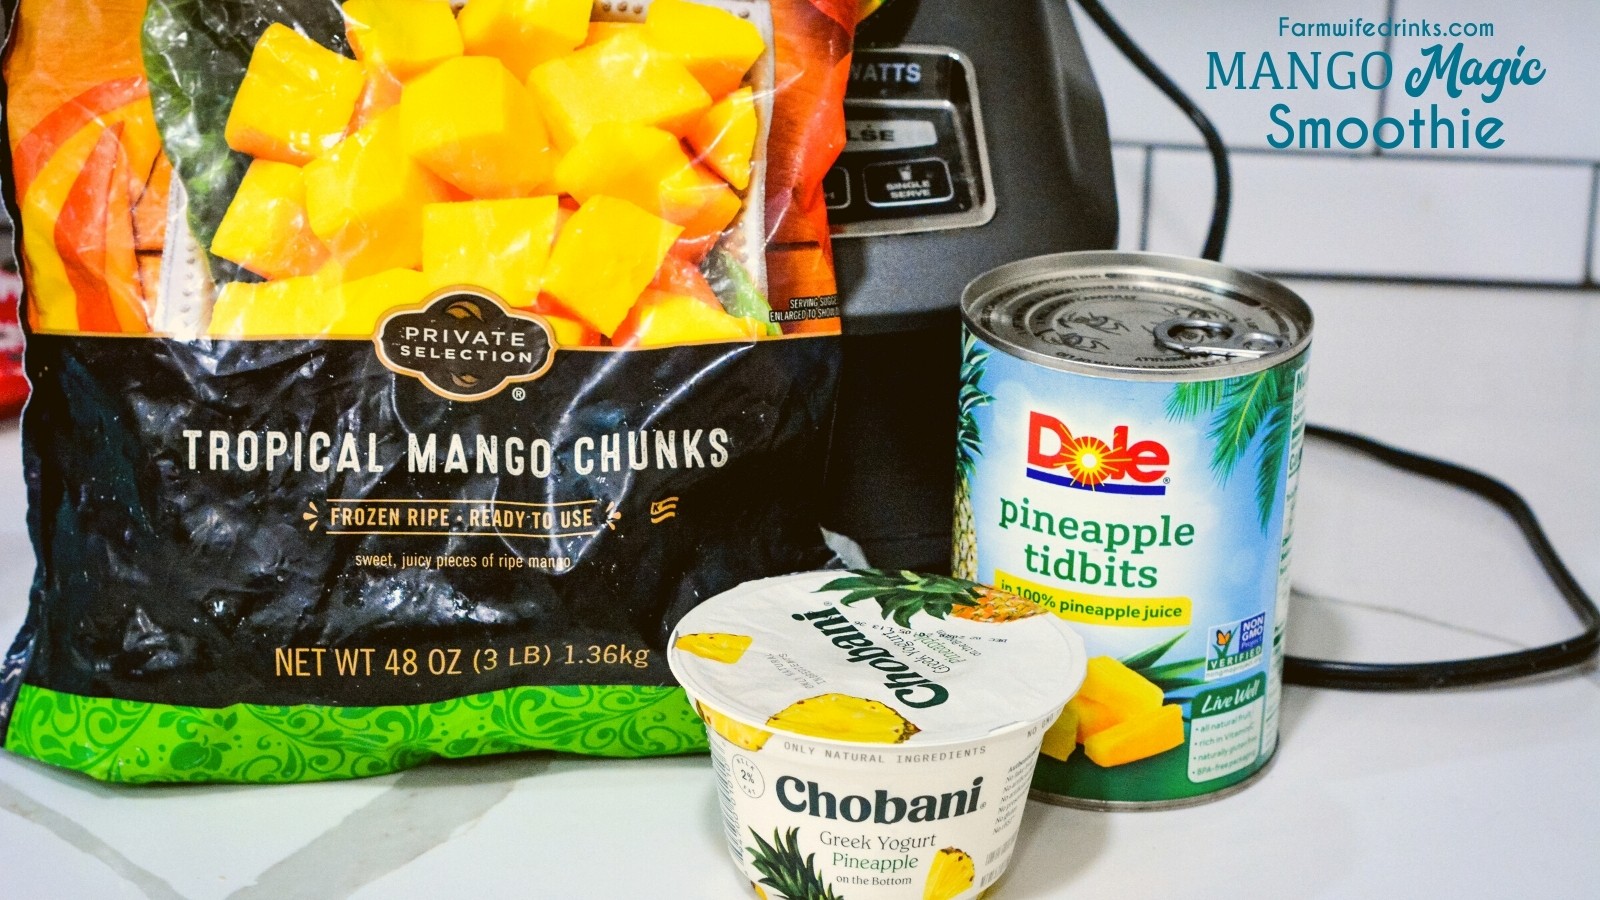 Mango Magic Smoothie Ingredients - Frozen Mango, pineapple, greek yogurt